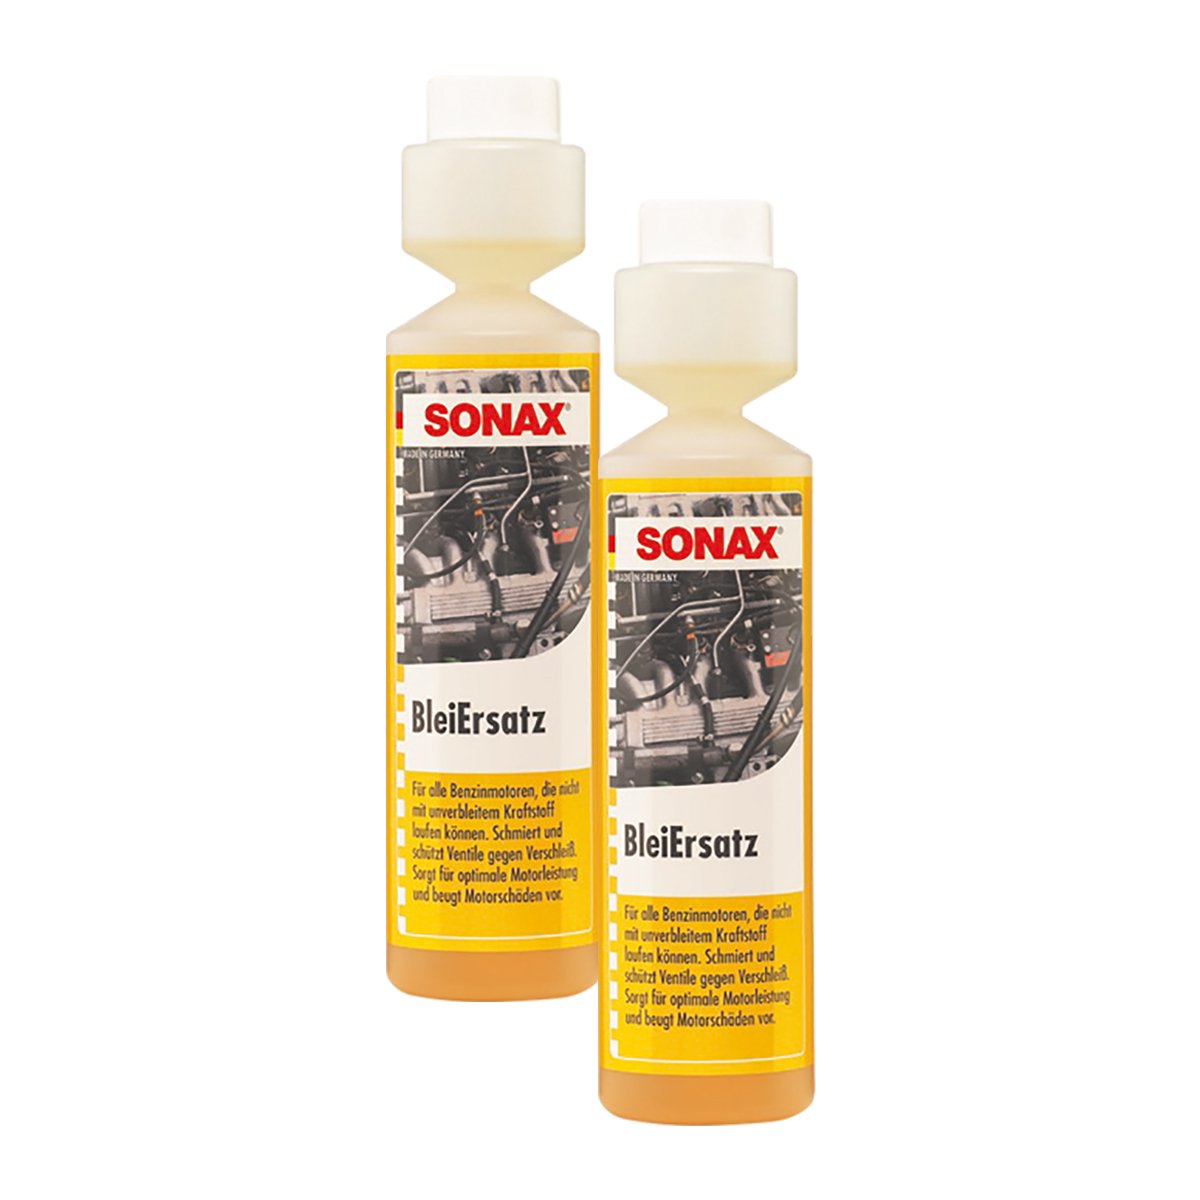 SONAX 2X 05121410 BleiErsatz Bleiersatzstoff Kraftstoff Benzin Additiv 250ml von SONAX